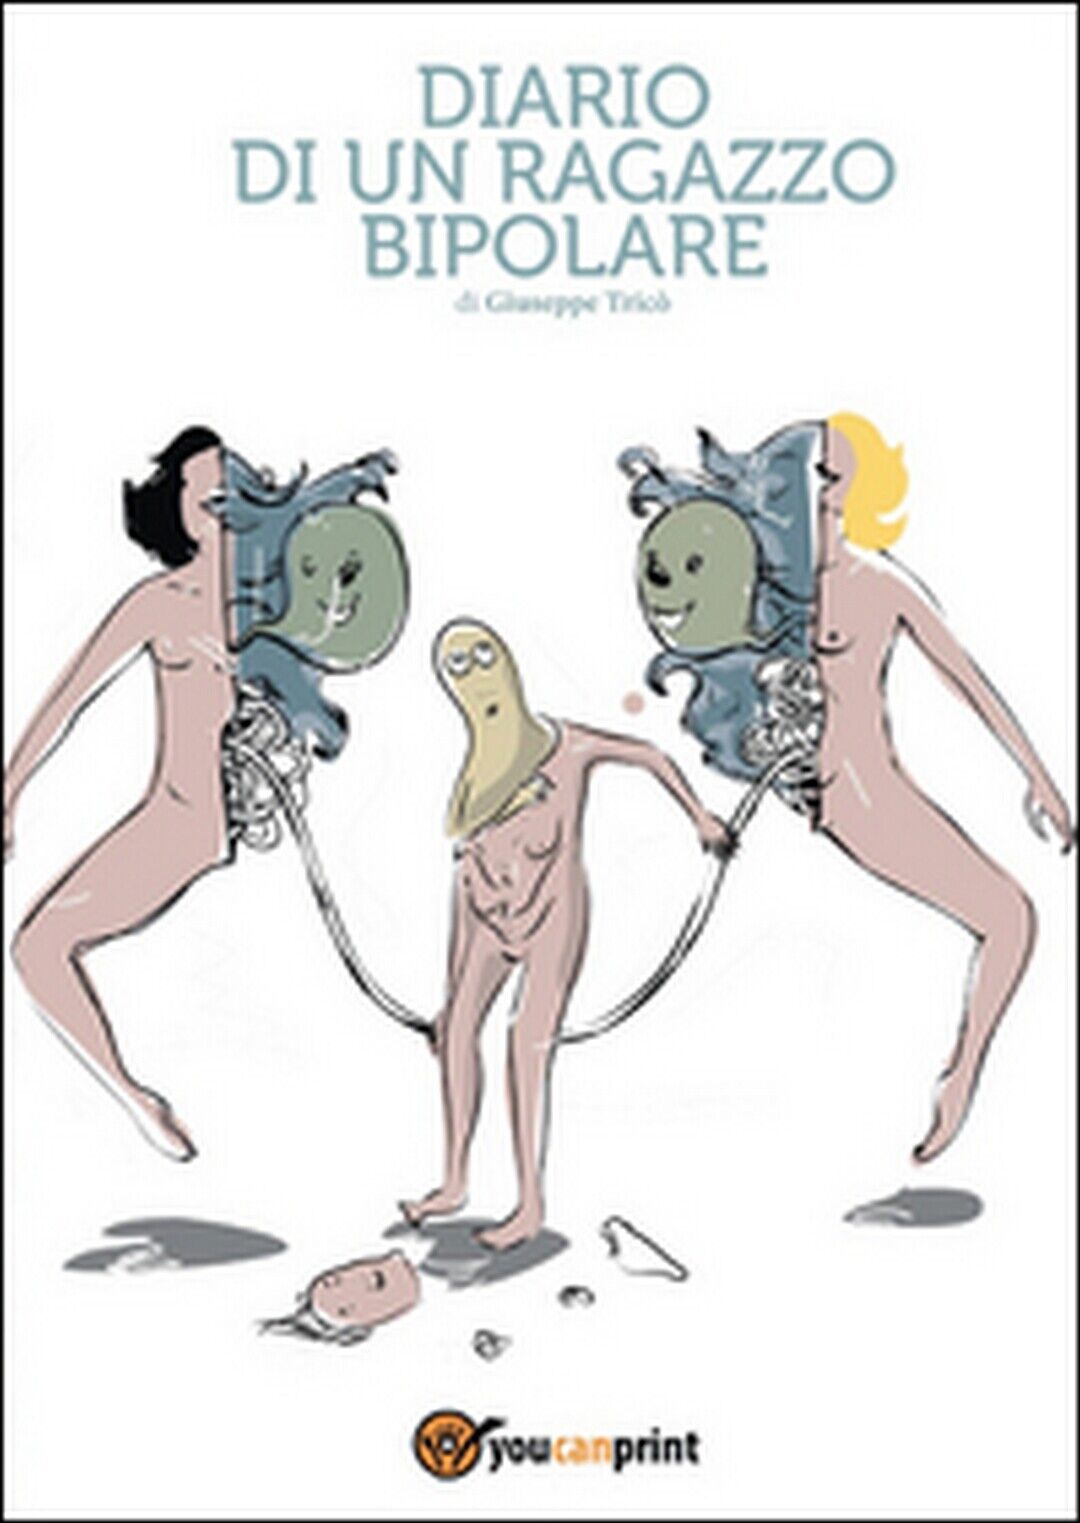 Diario di un ragazzo bipolare  di Giuseppe Tric?,  2015,  Youcanprint